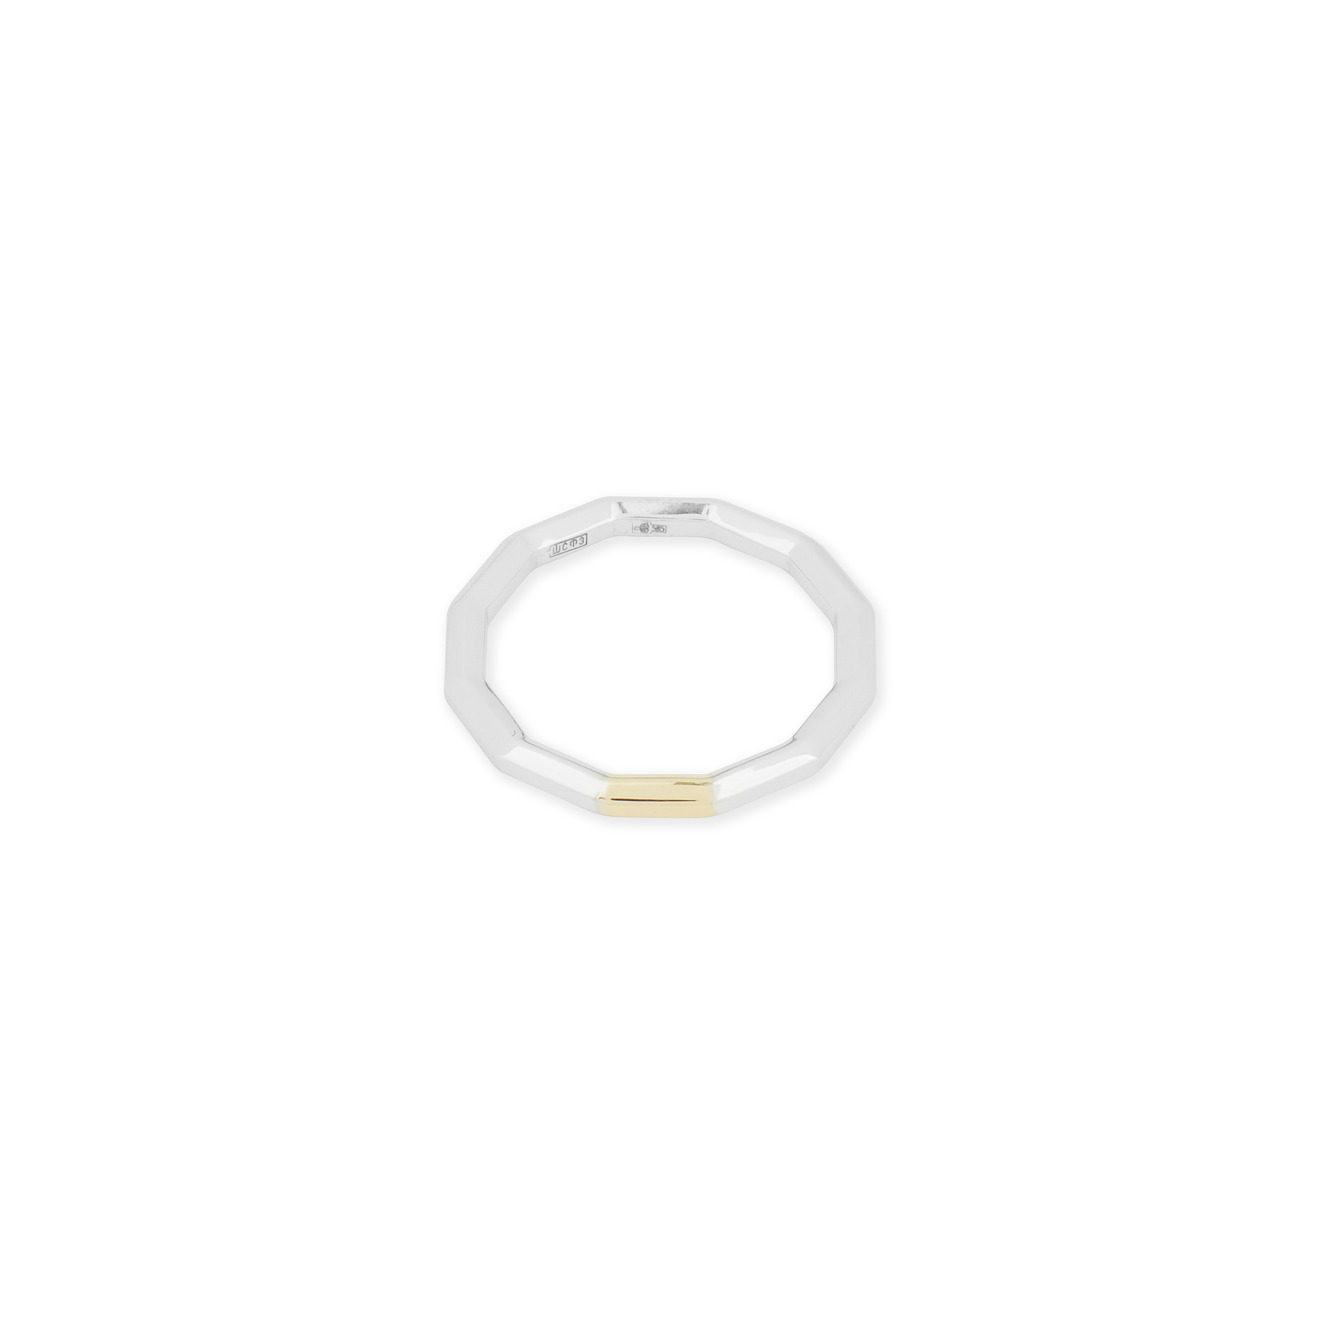 Avgvst Обручальное кольцо из золота Double Gold с сегментом из лимонного золота avgvst пусеты шарики из белого золота голубые